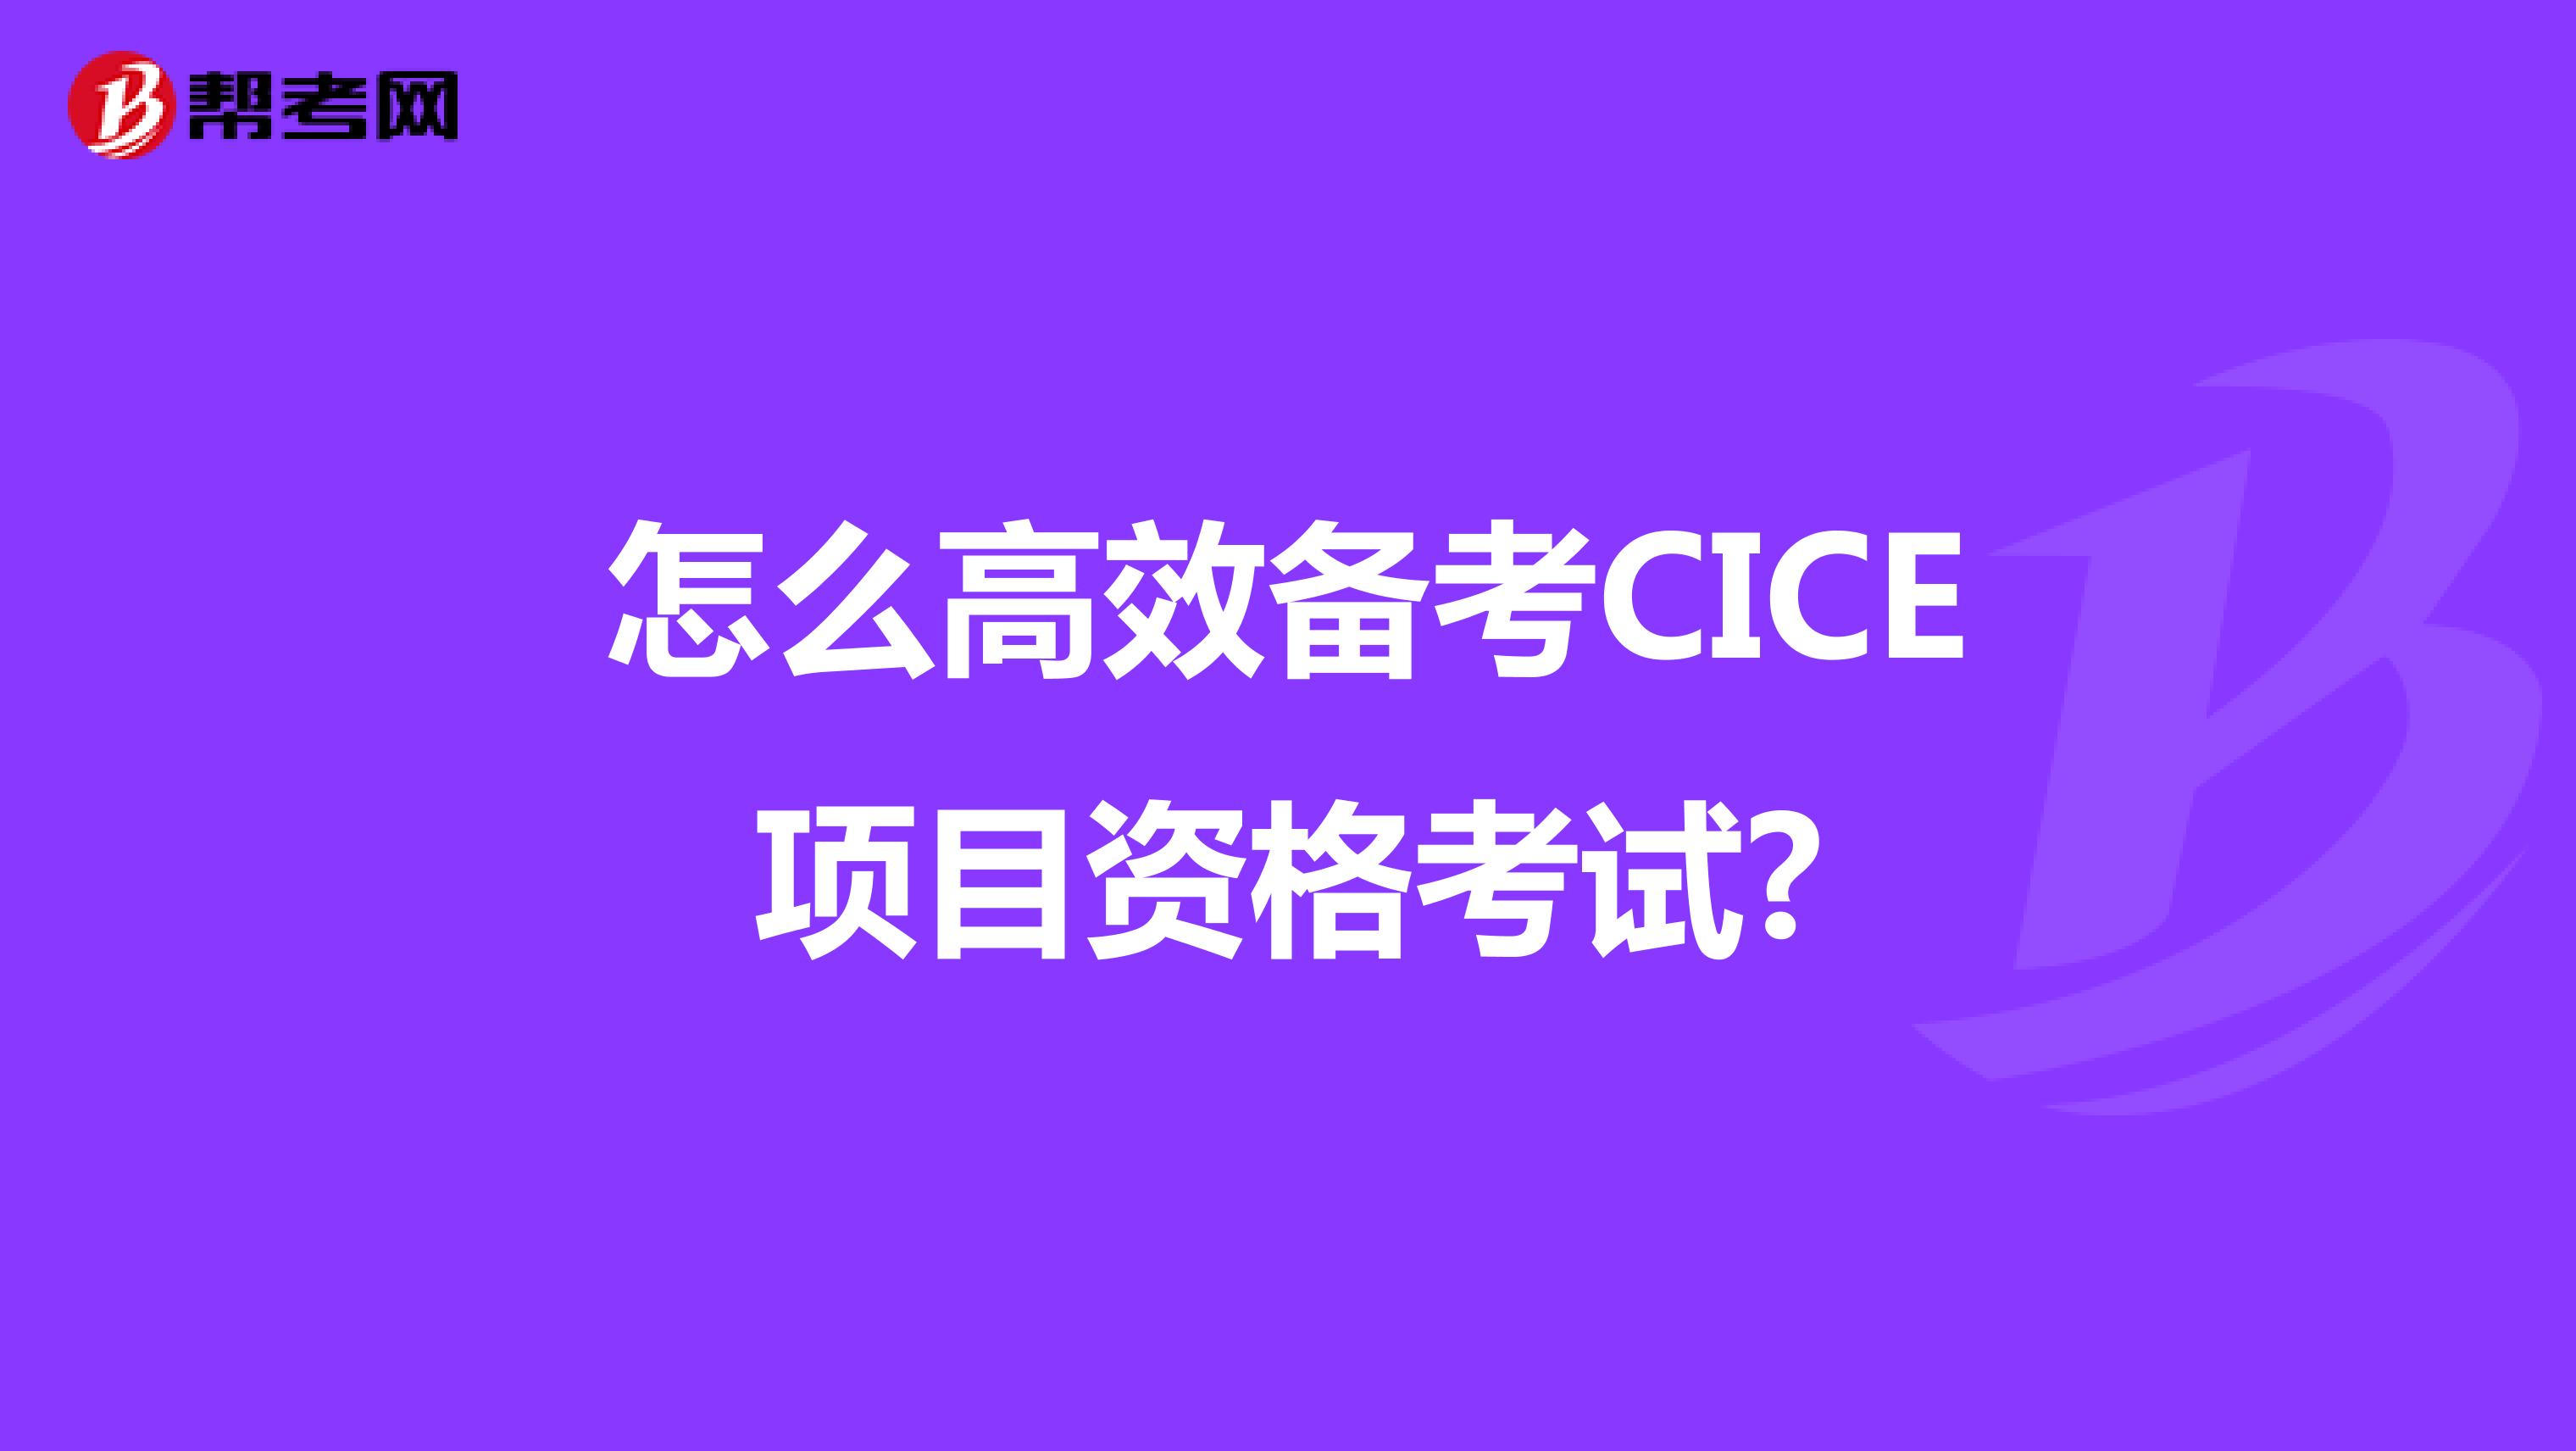 怎么高效备考CICE项目资格考试?